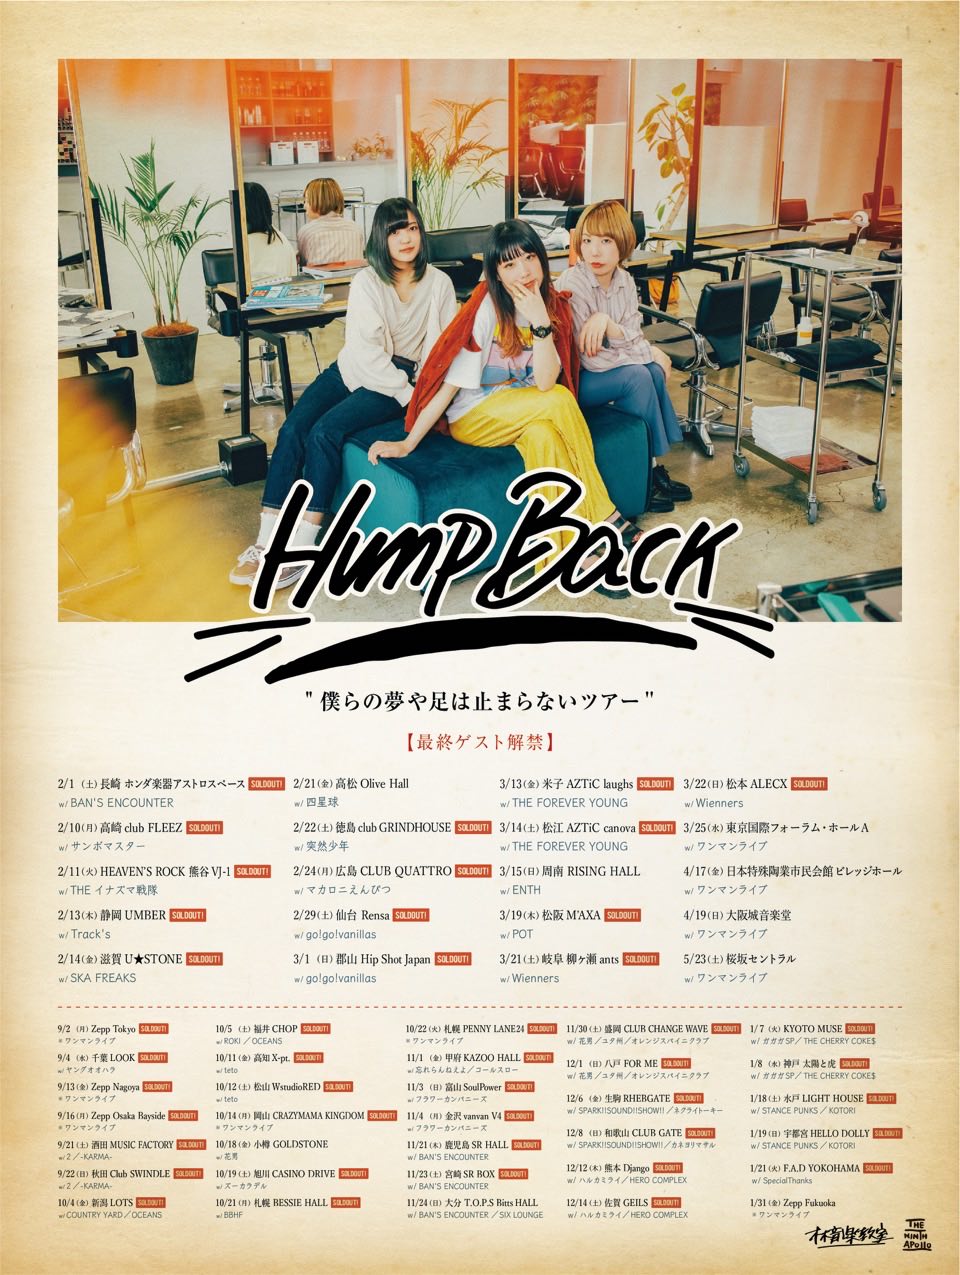 郡山 Hip Shot Japan <span class="soldout">公演延期</span><span class="live-title">Hump Back「僕らの夢や足は止まらないツアー」</span> 